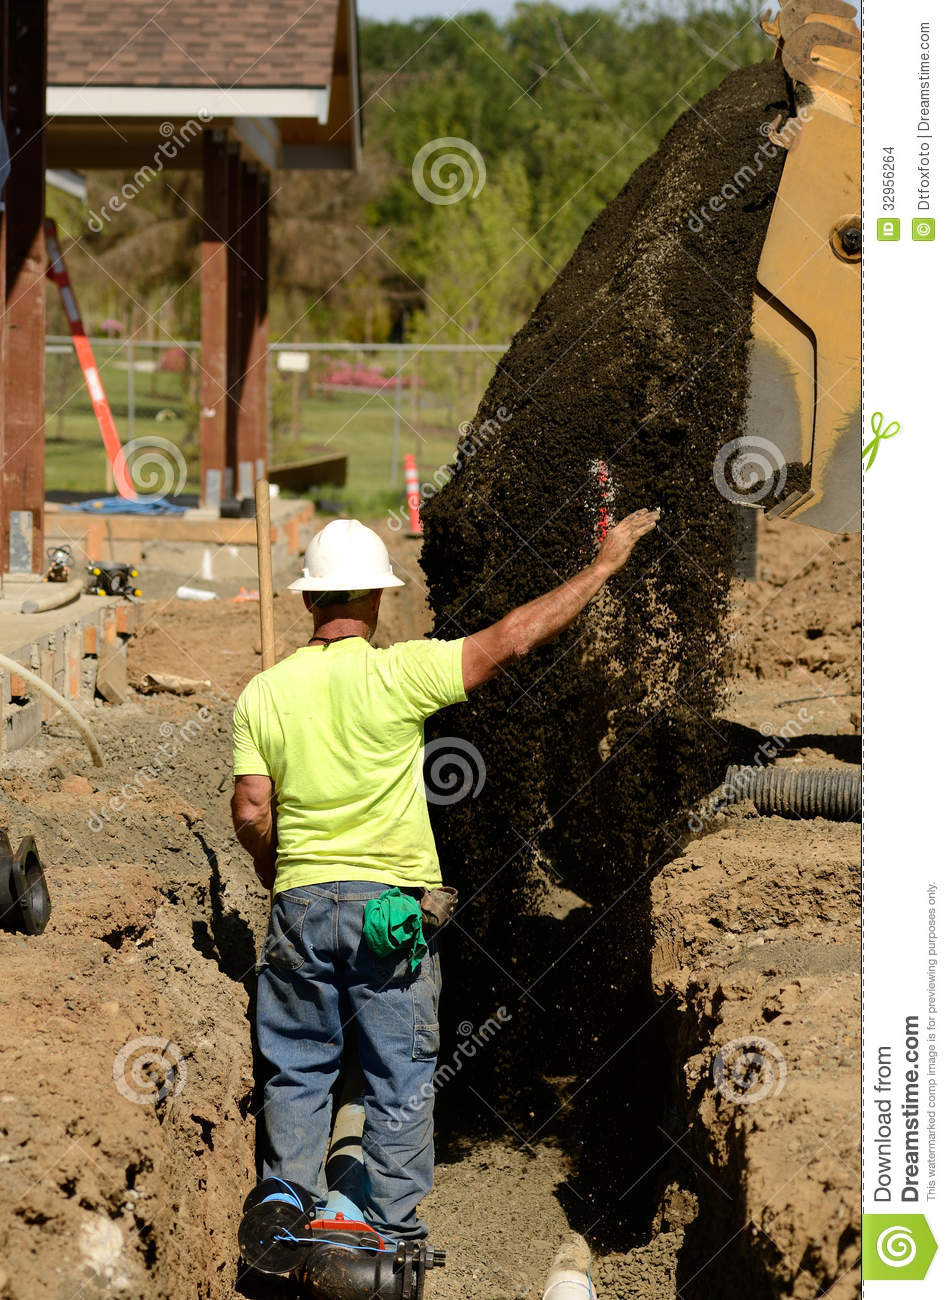 Infrastructure Excavation Building Contractors Installing Water Lines